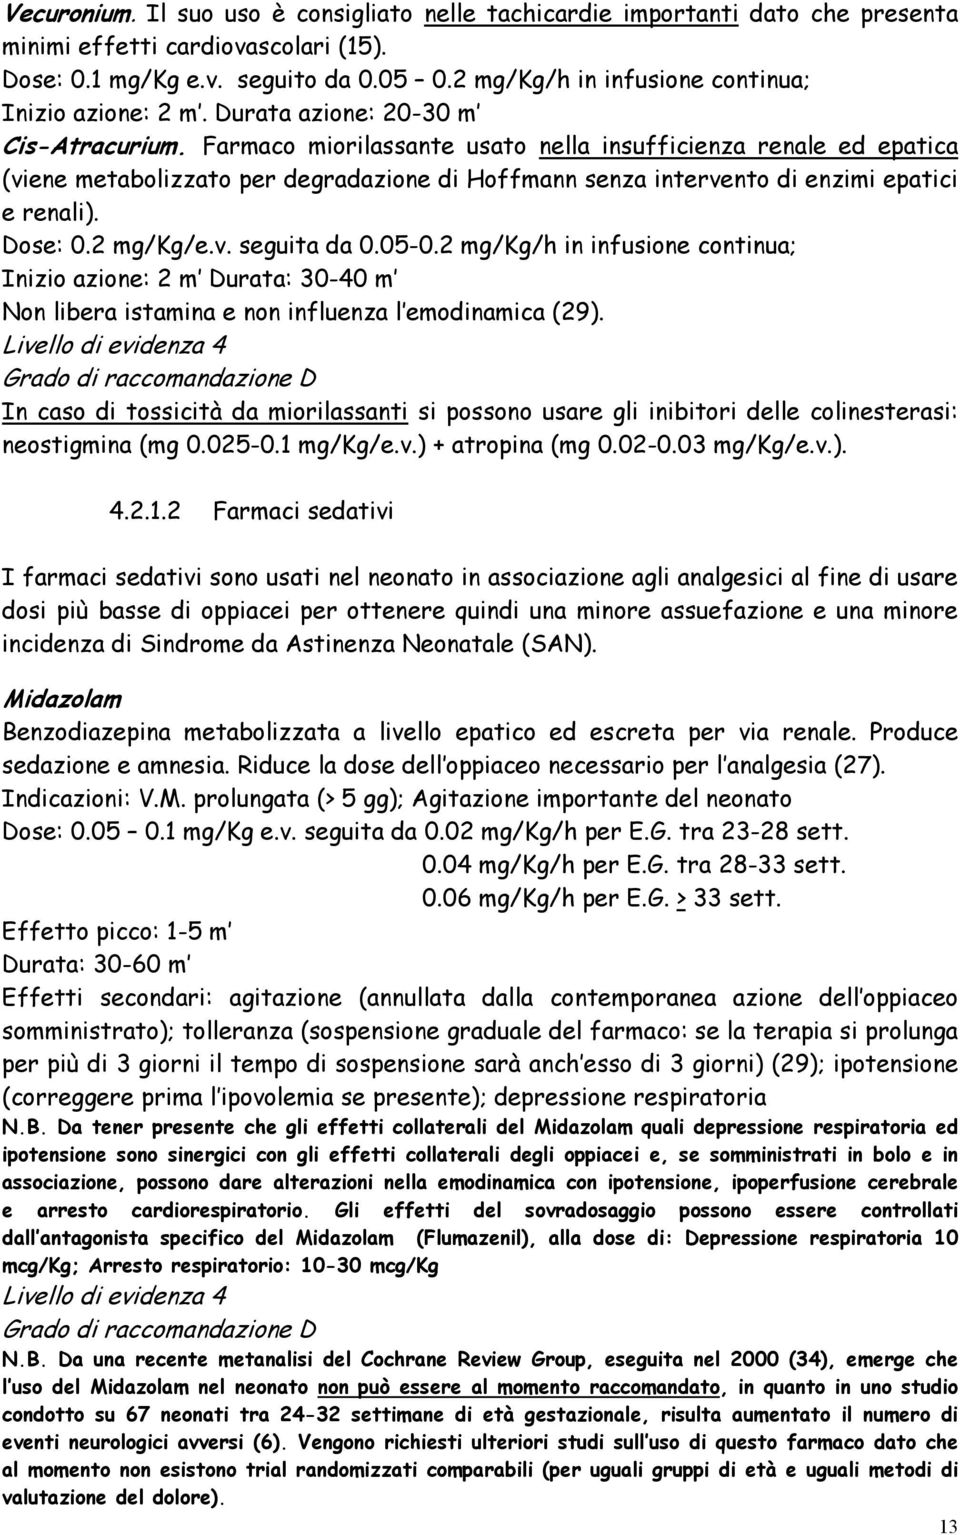 Farmaco miorilassante usato nella insufficienza renale ed epatica (viene metabolizzato per degradazione di Hoffmann senza intervento di enzimi epatici e renali). Dose: 0.2 mg/kg/e.v. seguita da 0.